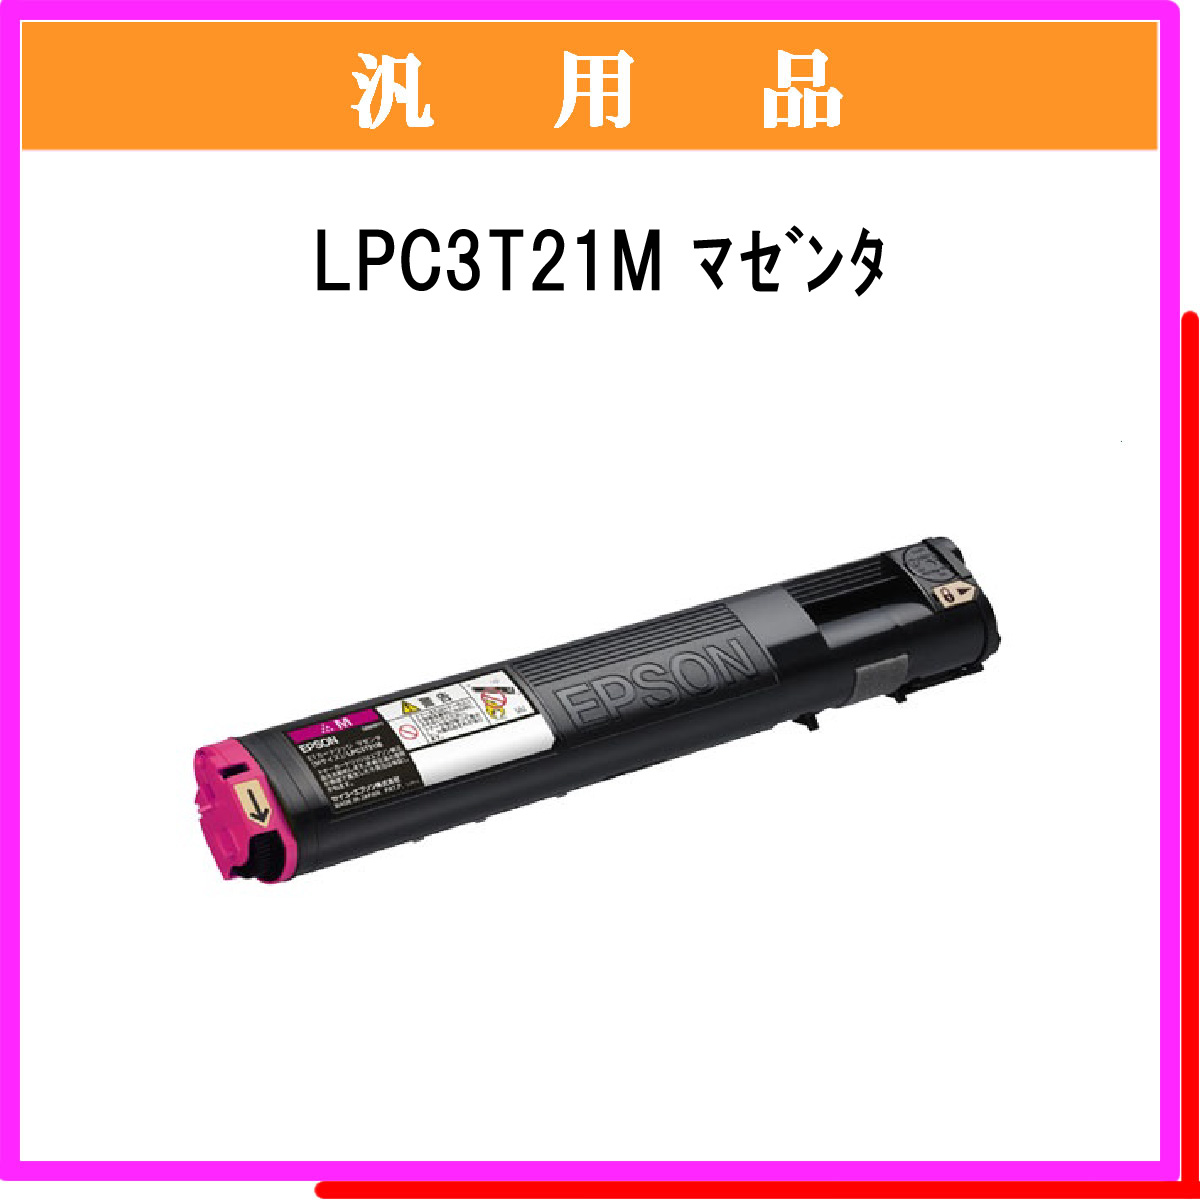 LPC3T21M 汎用品